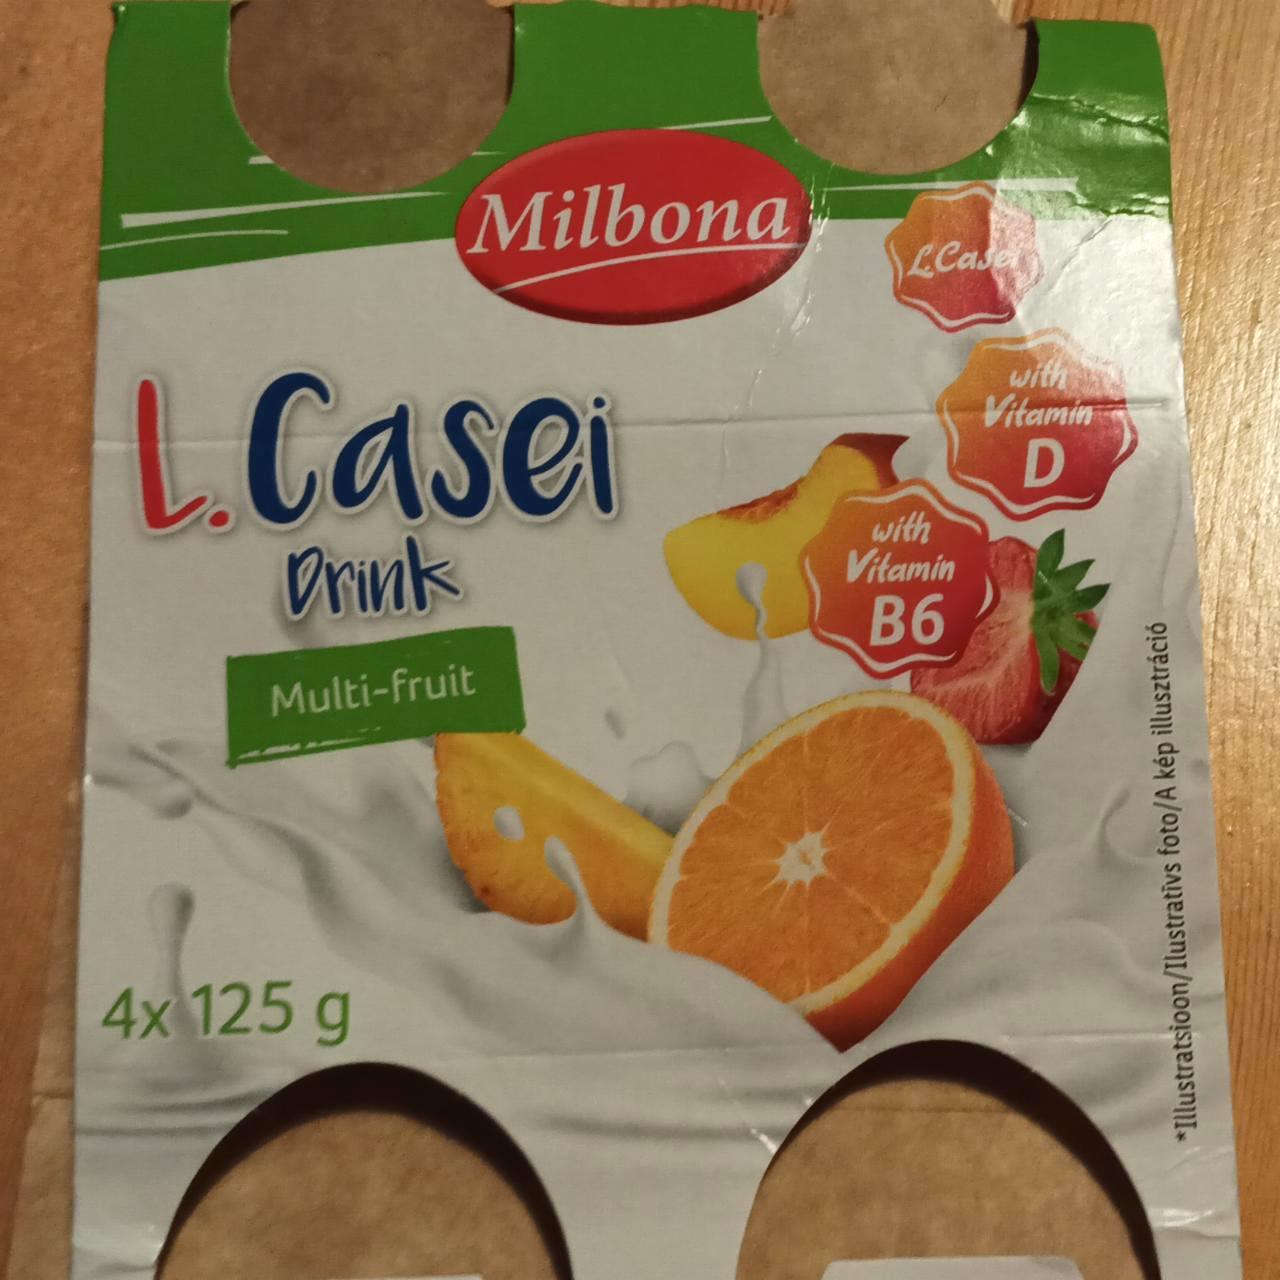 Képek - L. casei drink Multi fruit Milbona